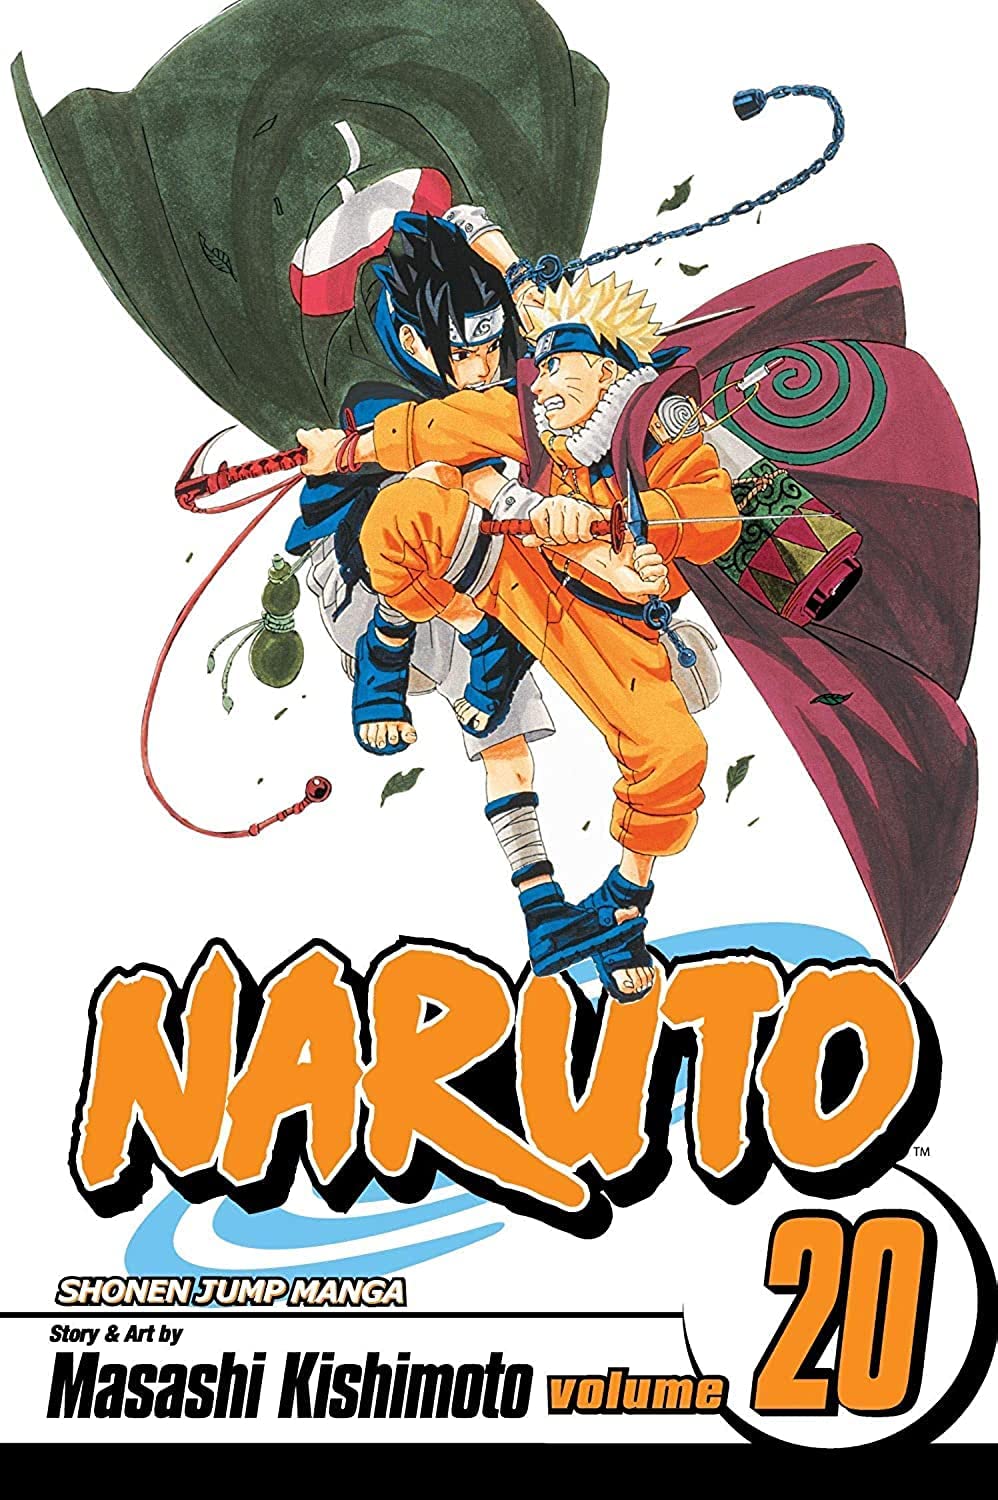 Naruto Vol. 20 - Naruto vs. Sasuke (পেপারব্যাক)